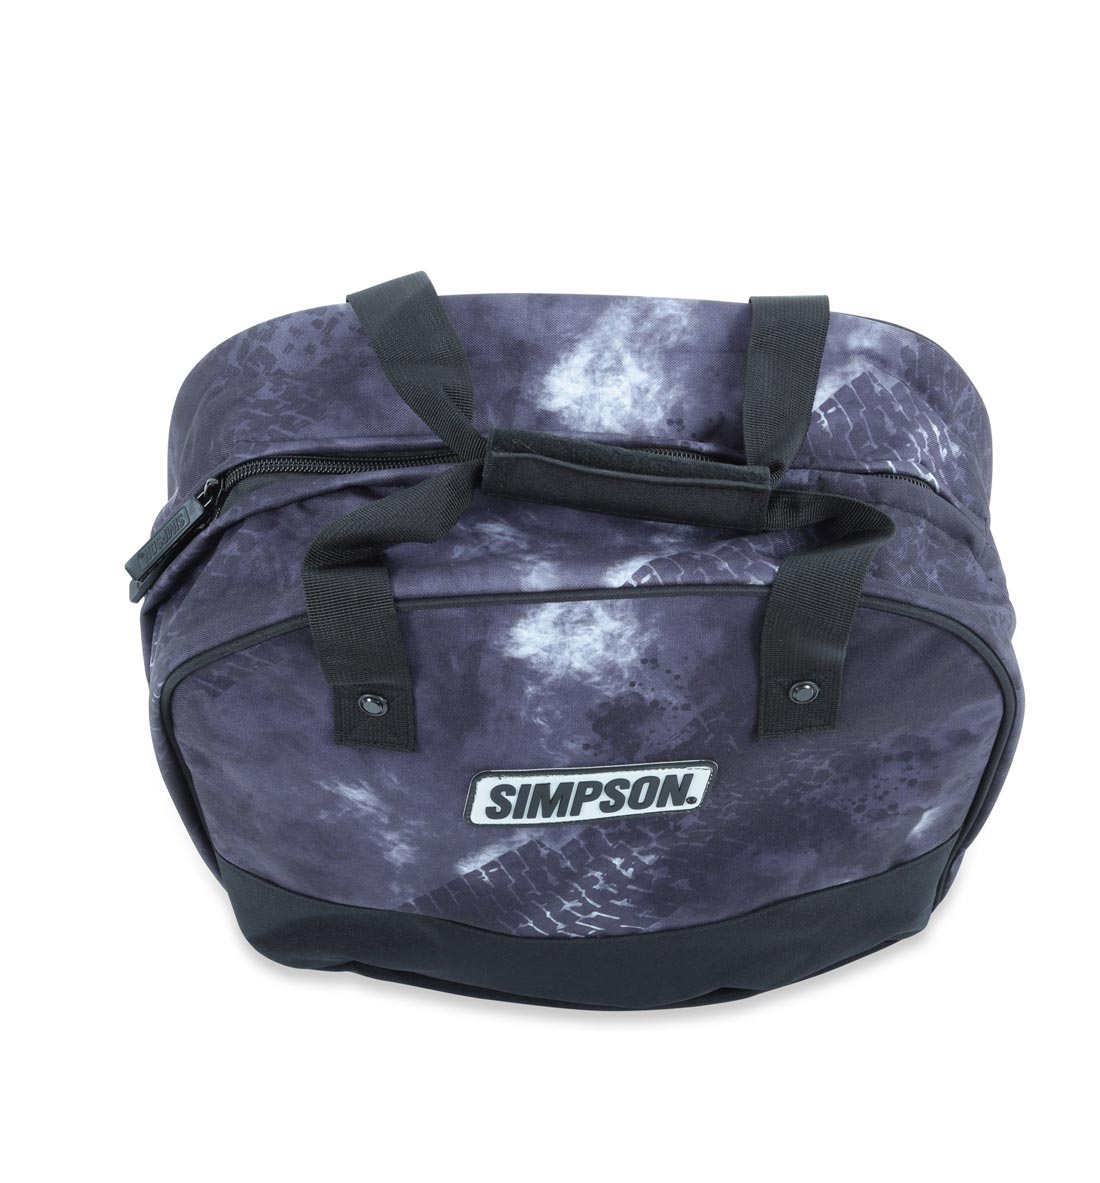 Simpson Single Helmet Bag